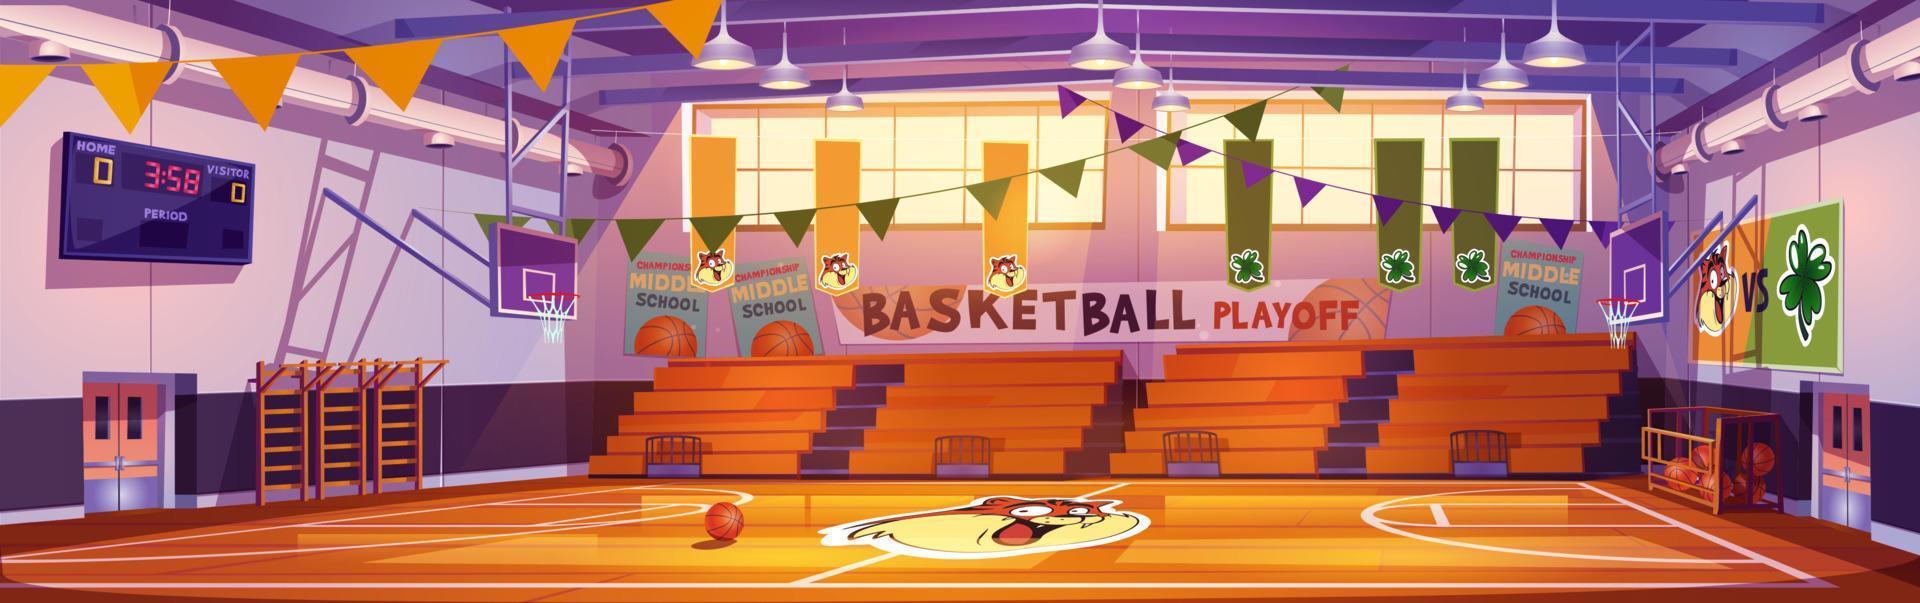 interior de la cancha de baloncesto, arena deportiva escolar vector